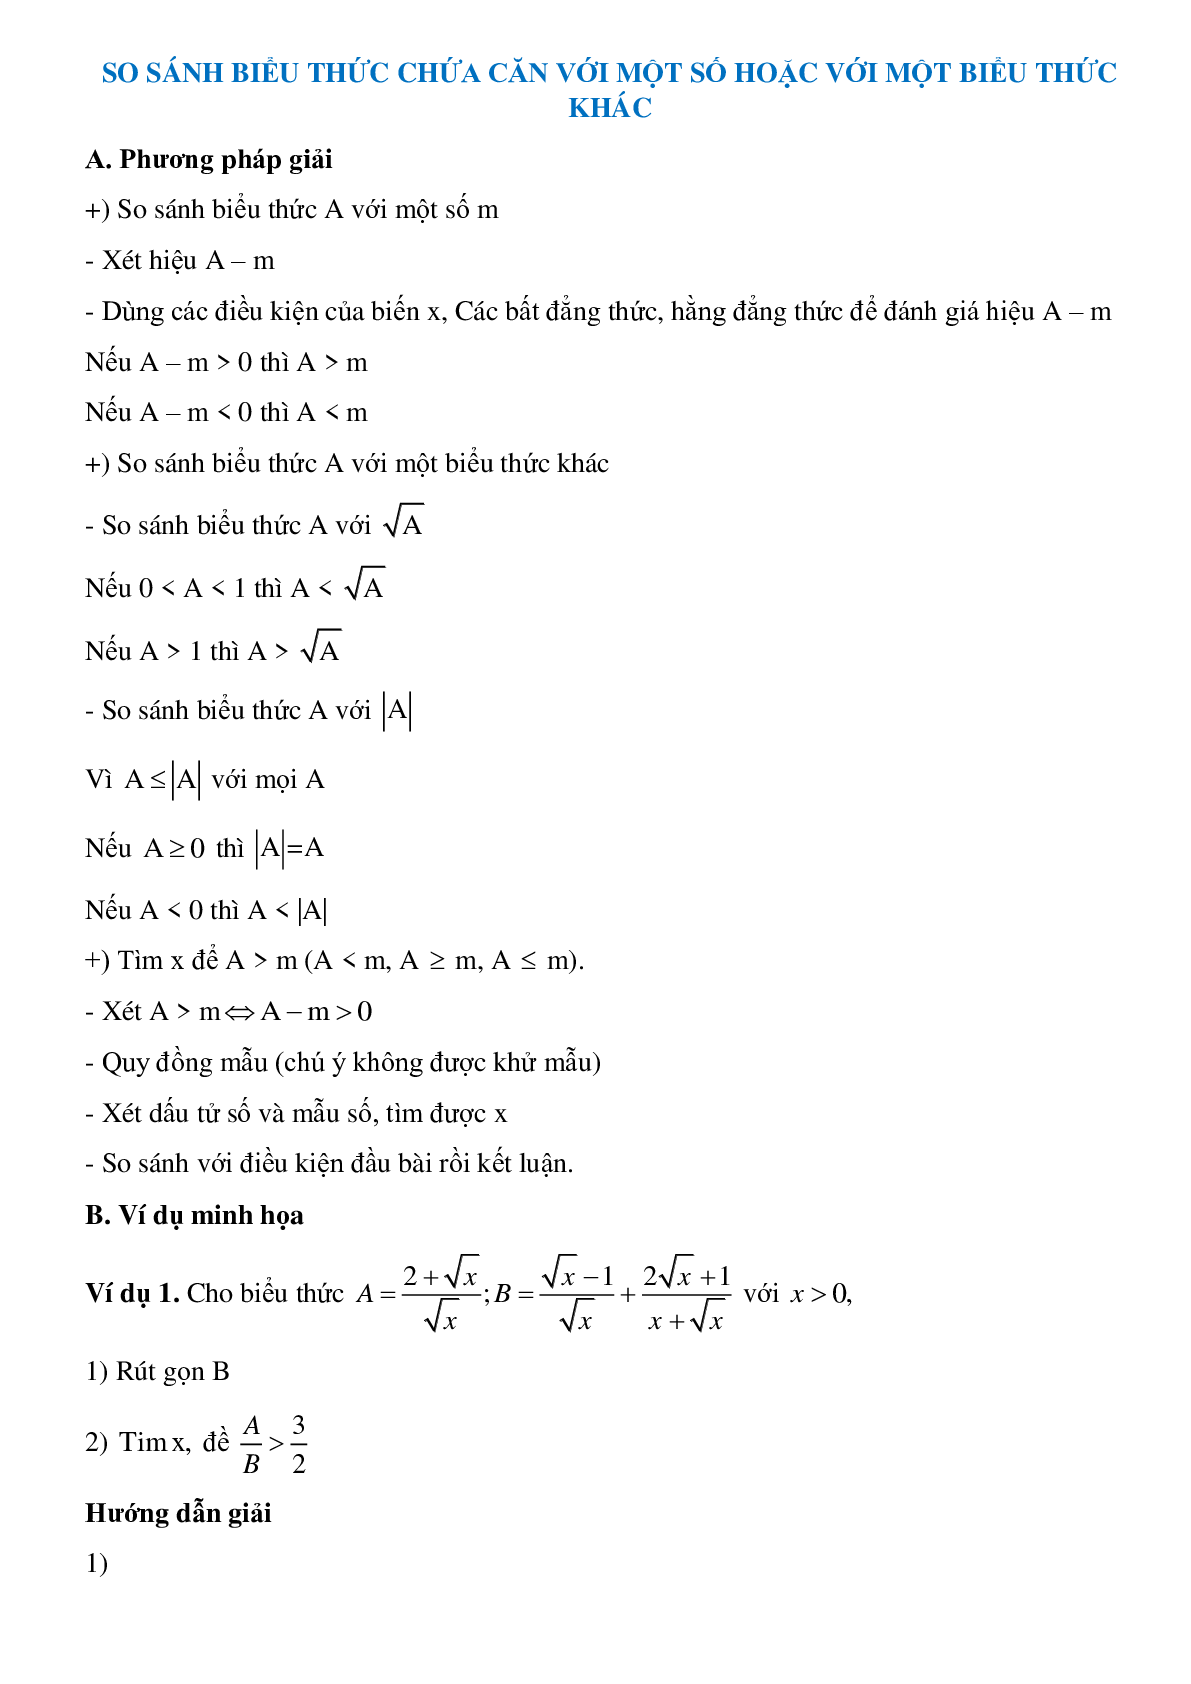 Phương pháp giải So sánh biểu thức chứa căn với một số hoặc với một biểu thức khác (trang 1)